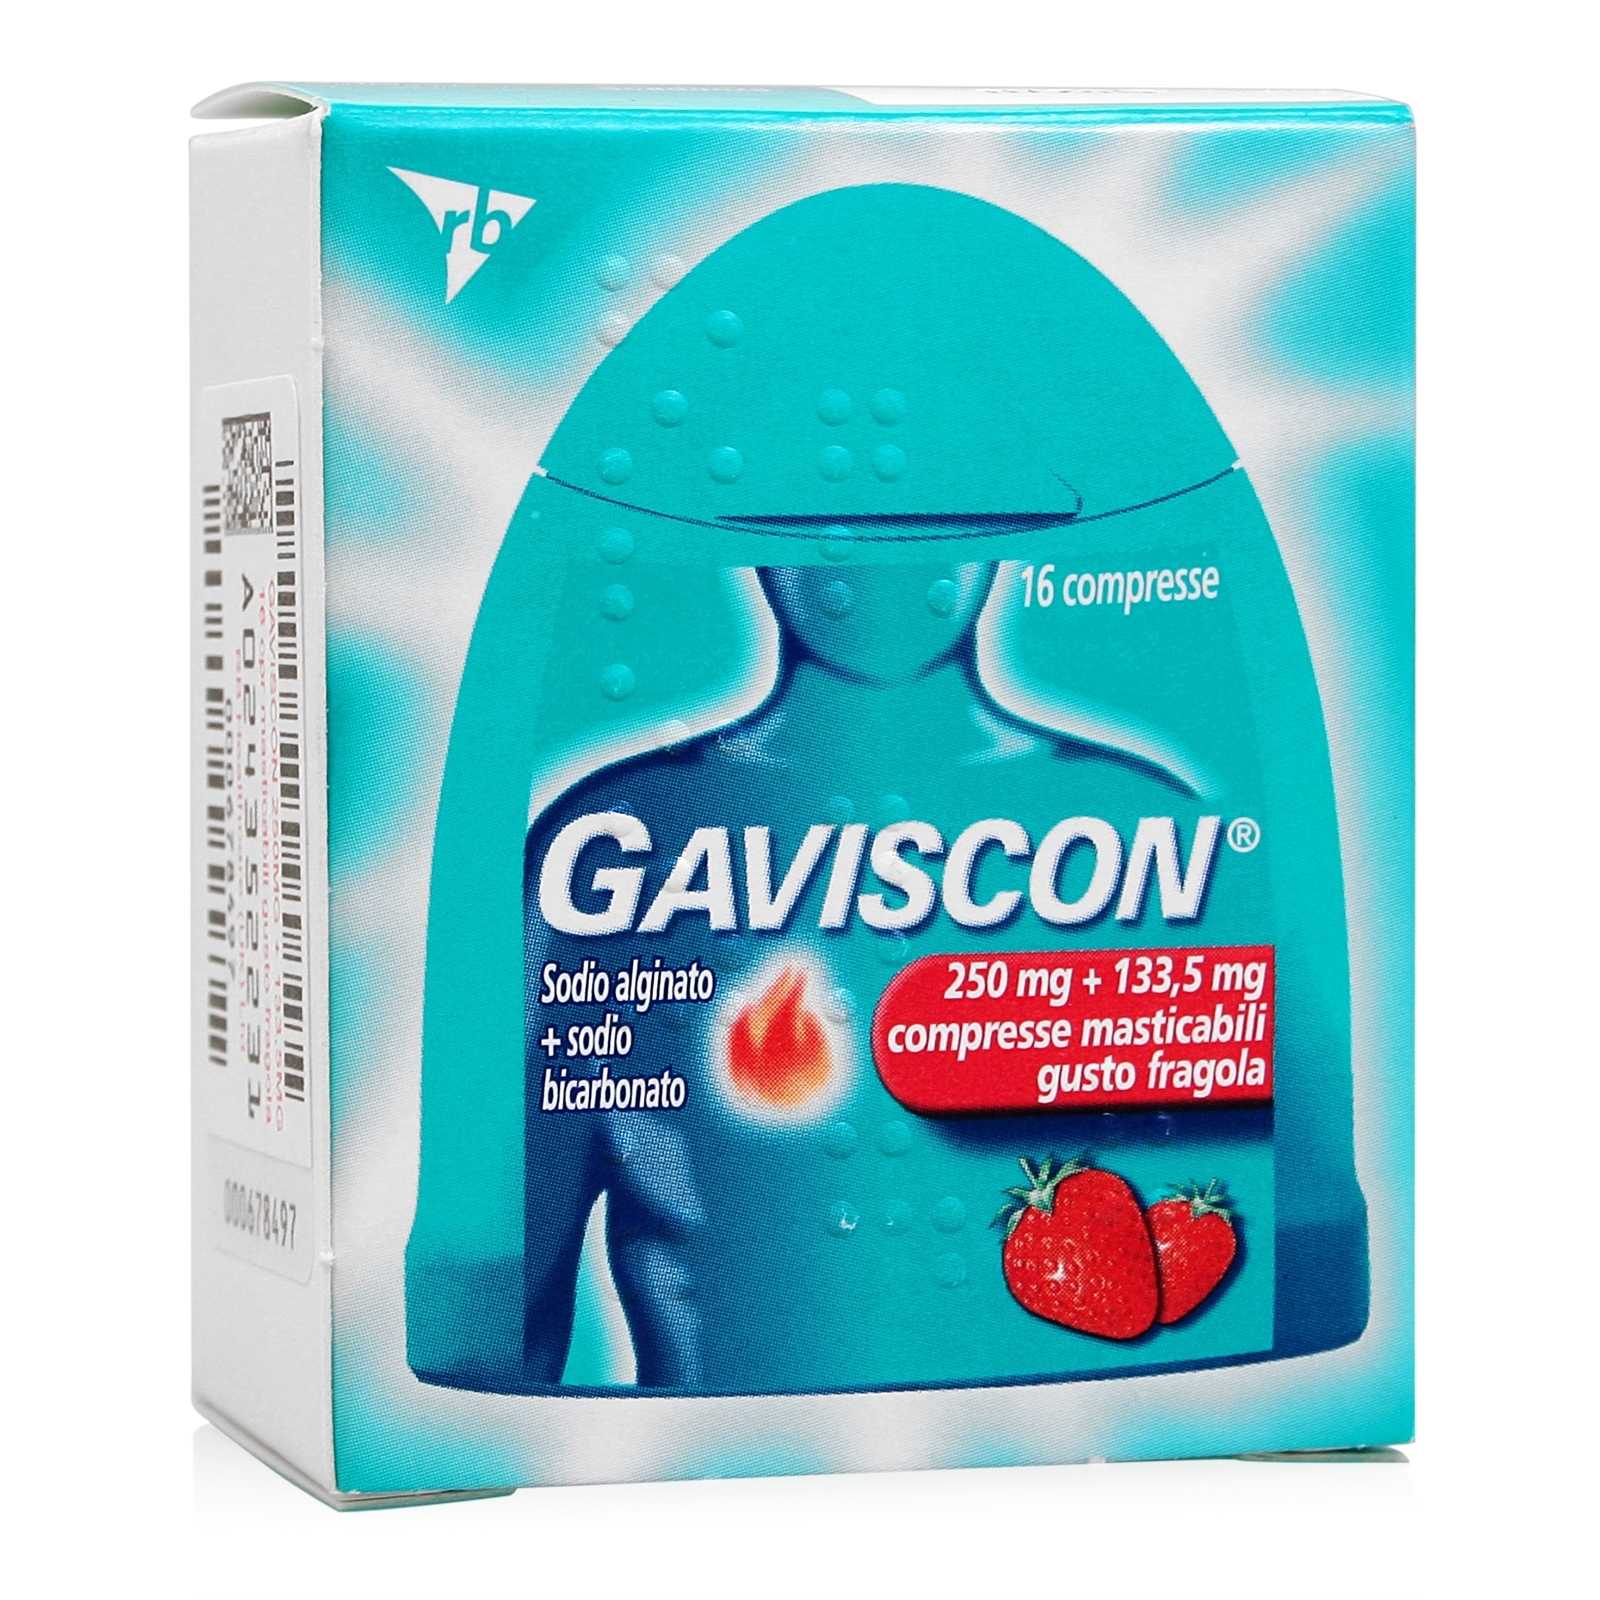 Gaviscon - Compresse Masticabili - Gusto Fragola